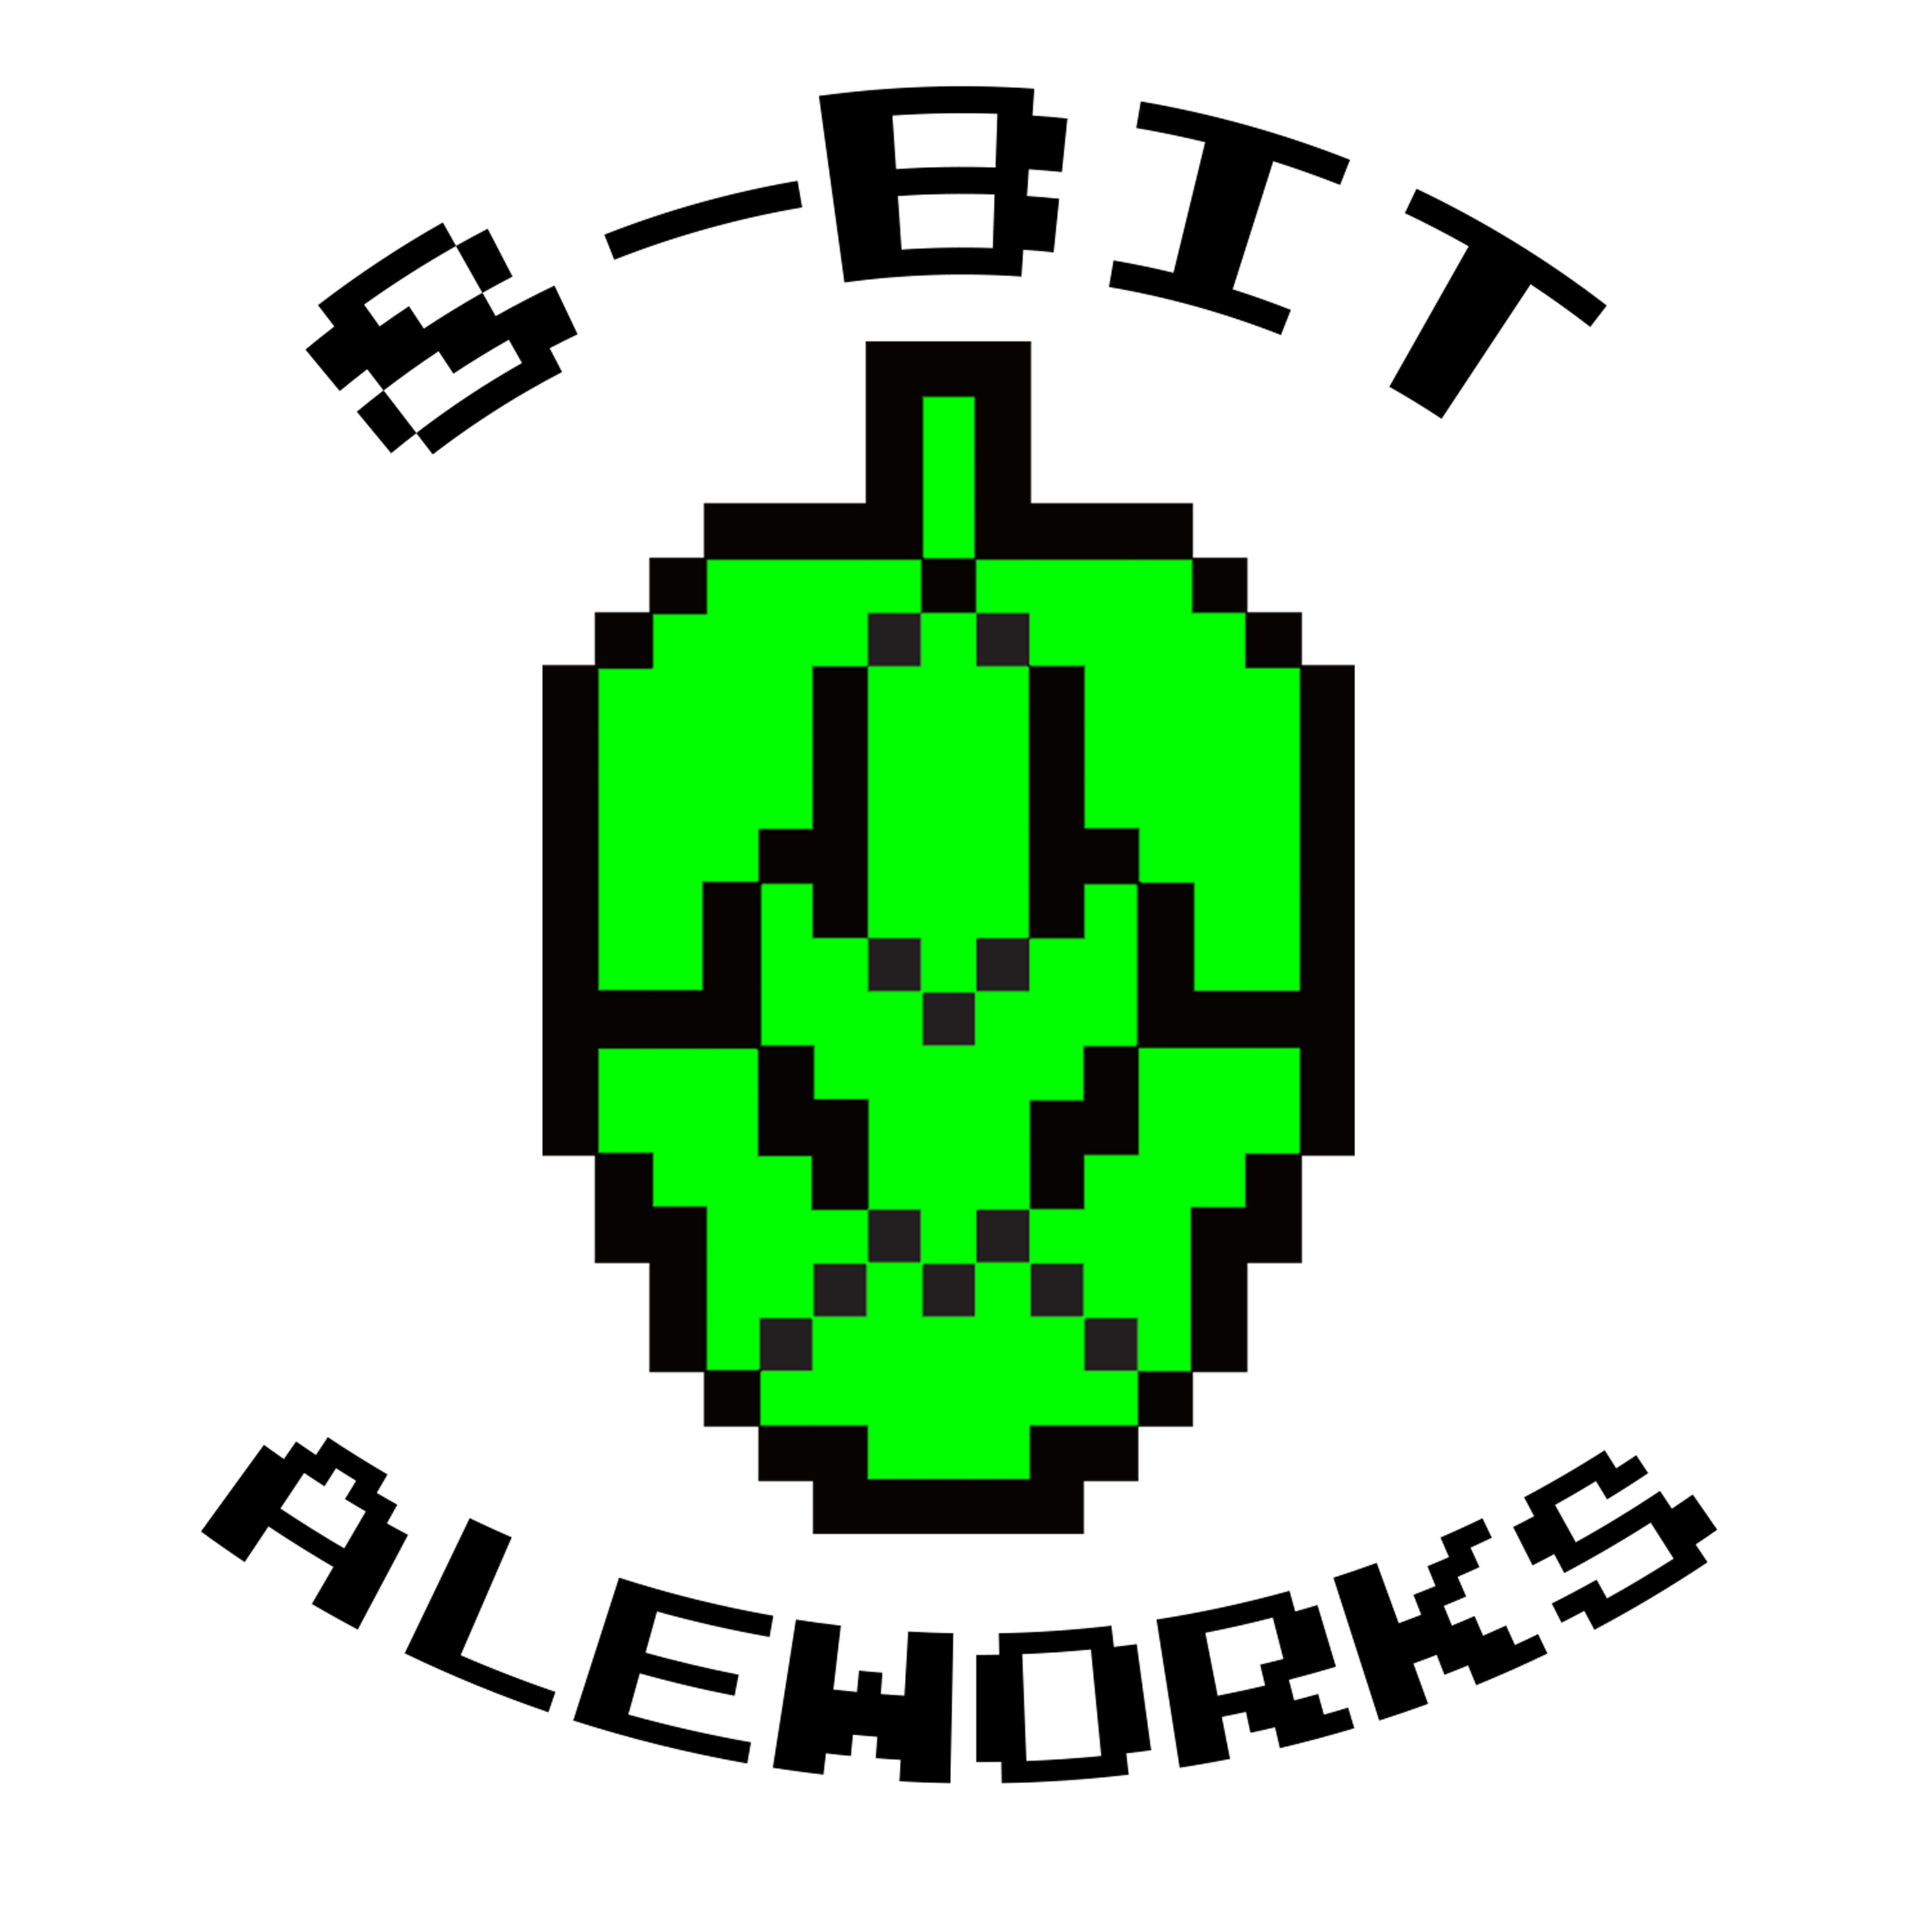 8-Bit